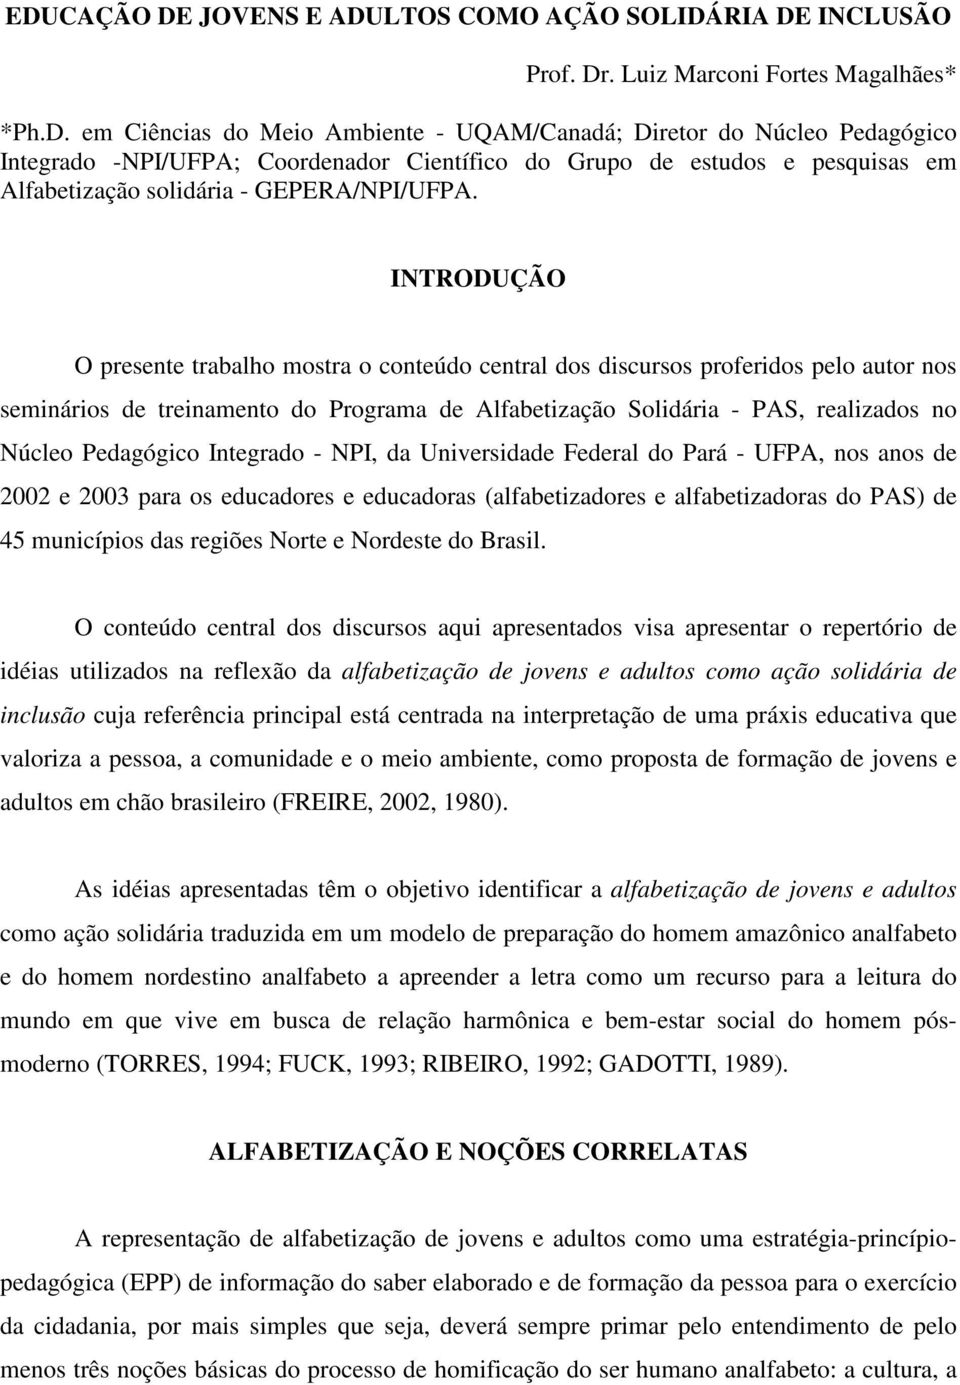 Pedagógico Integrado - NPI, da Universidade Federal do Pará - UFPA, nos anos de 2002 e 2003 para os educadores e educadoras (alfabetizadores e alfabetizadoras do PAS) de 45 municípios das regiões